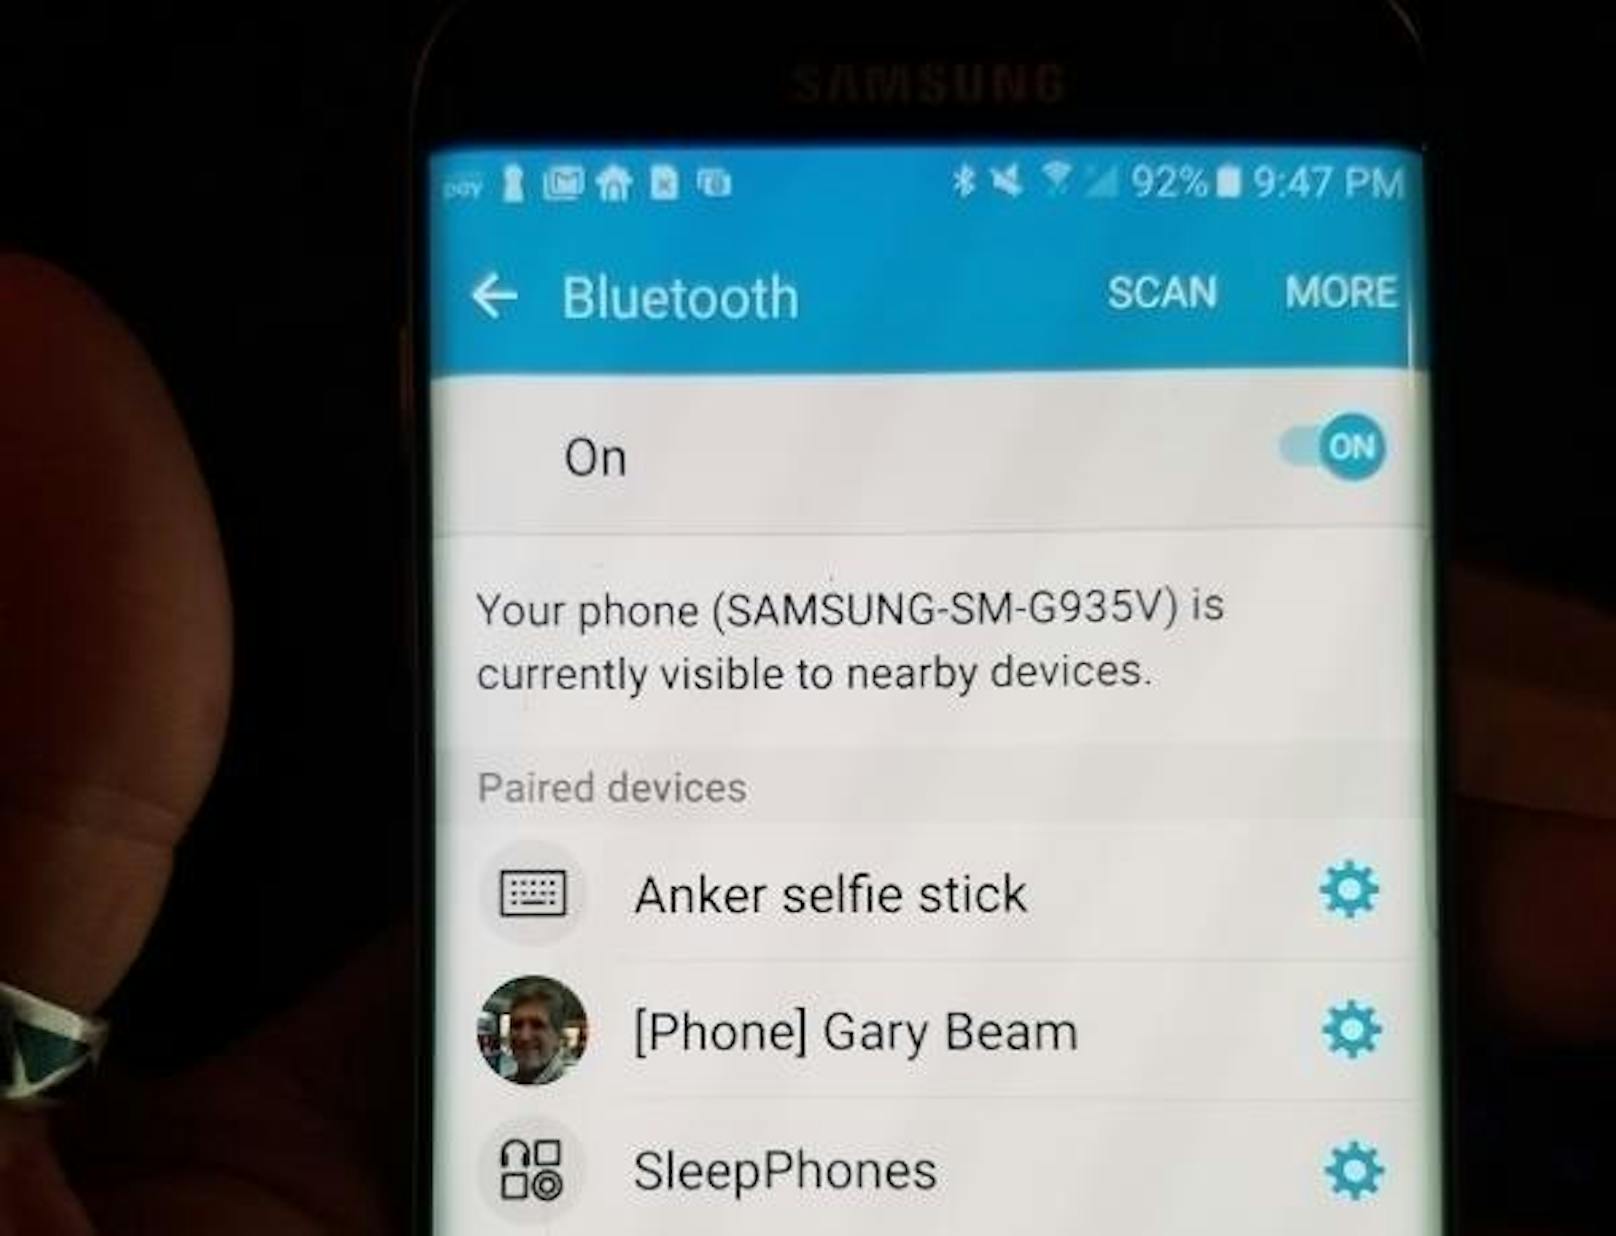 Falls verfügbar, empfiehlt es sich, umgehend entsprechende Sicherheitsupdates zu installieren. Ansonsten kann Bluetooth auch ganz deaktiviert werden.